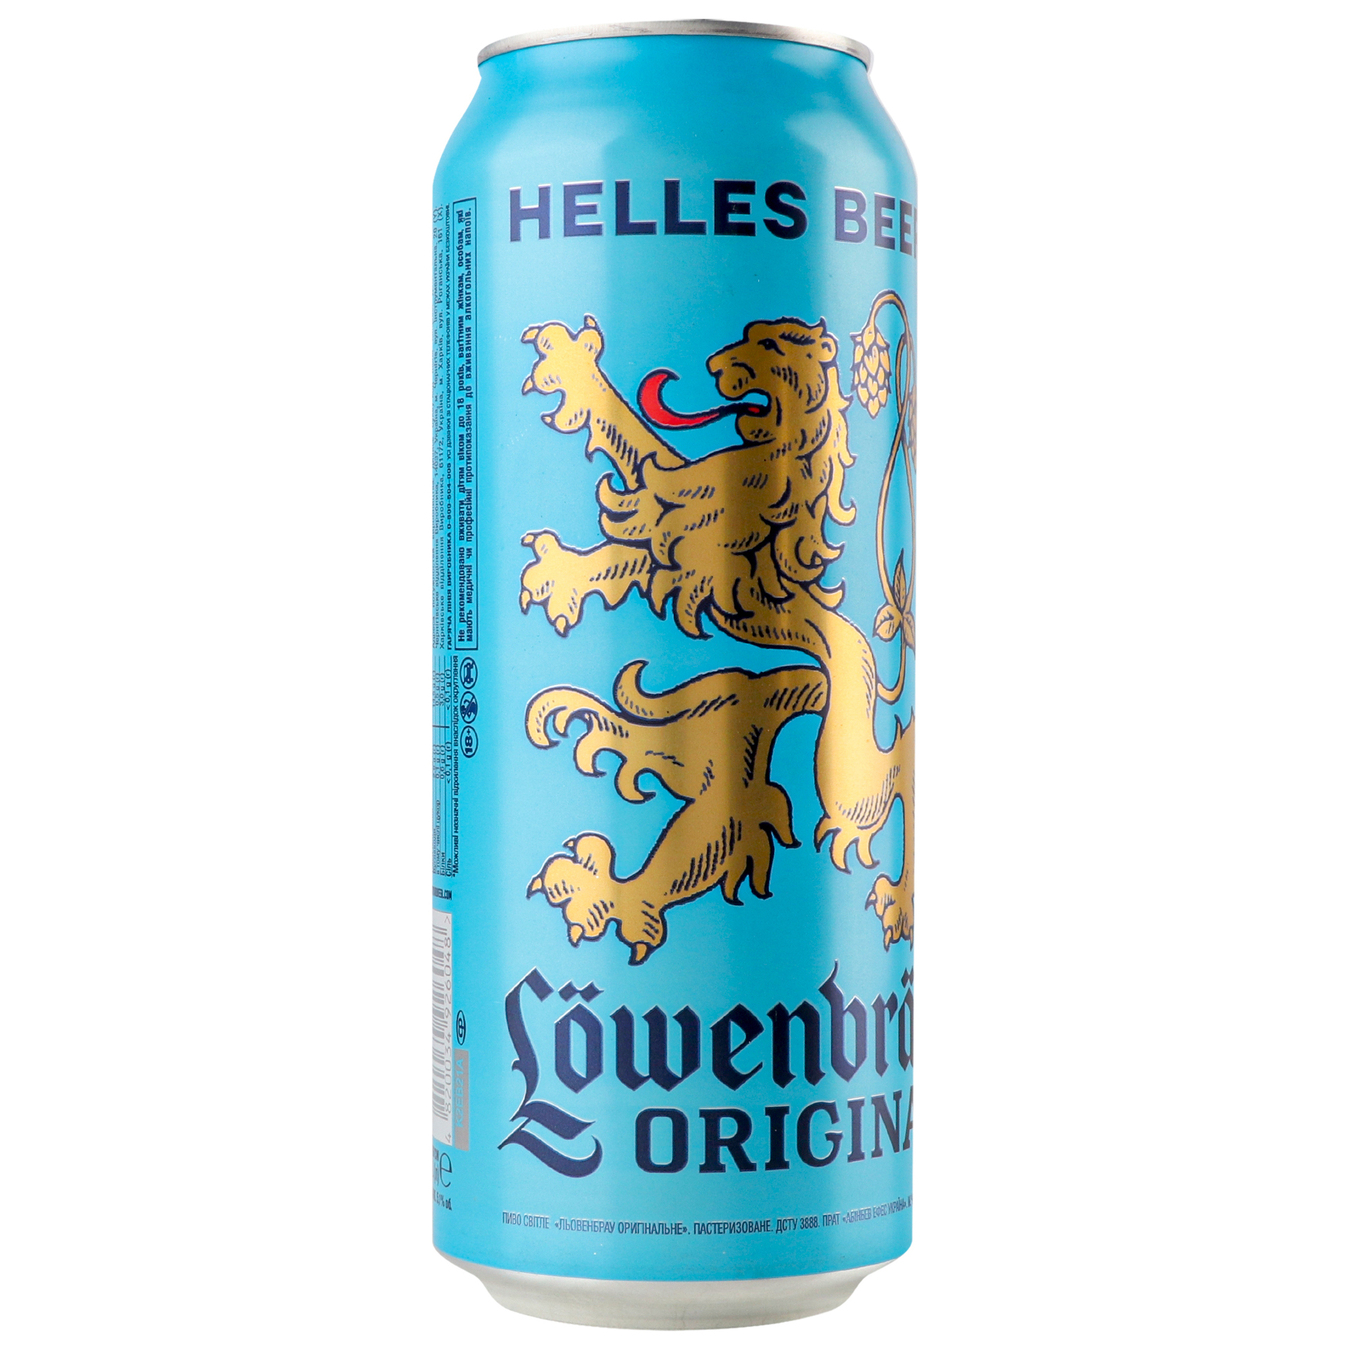 Beer Lowenbrau Original light pasteurized 5.1% 0.5l 3